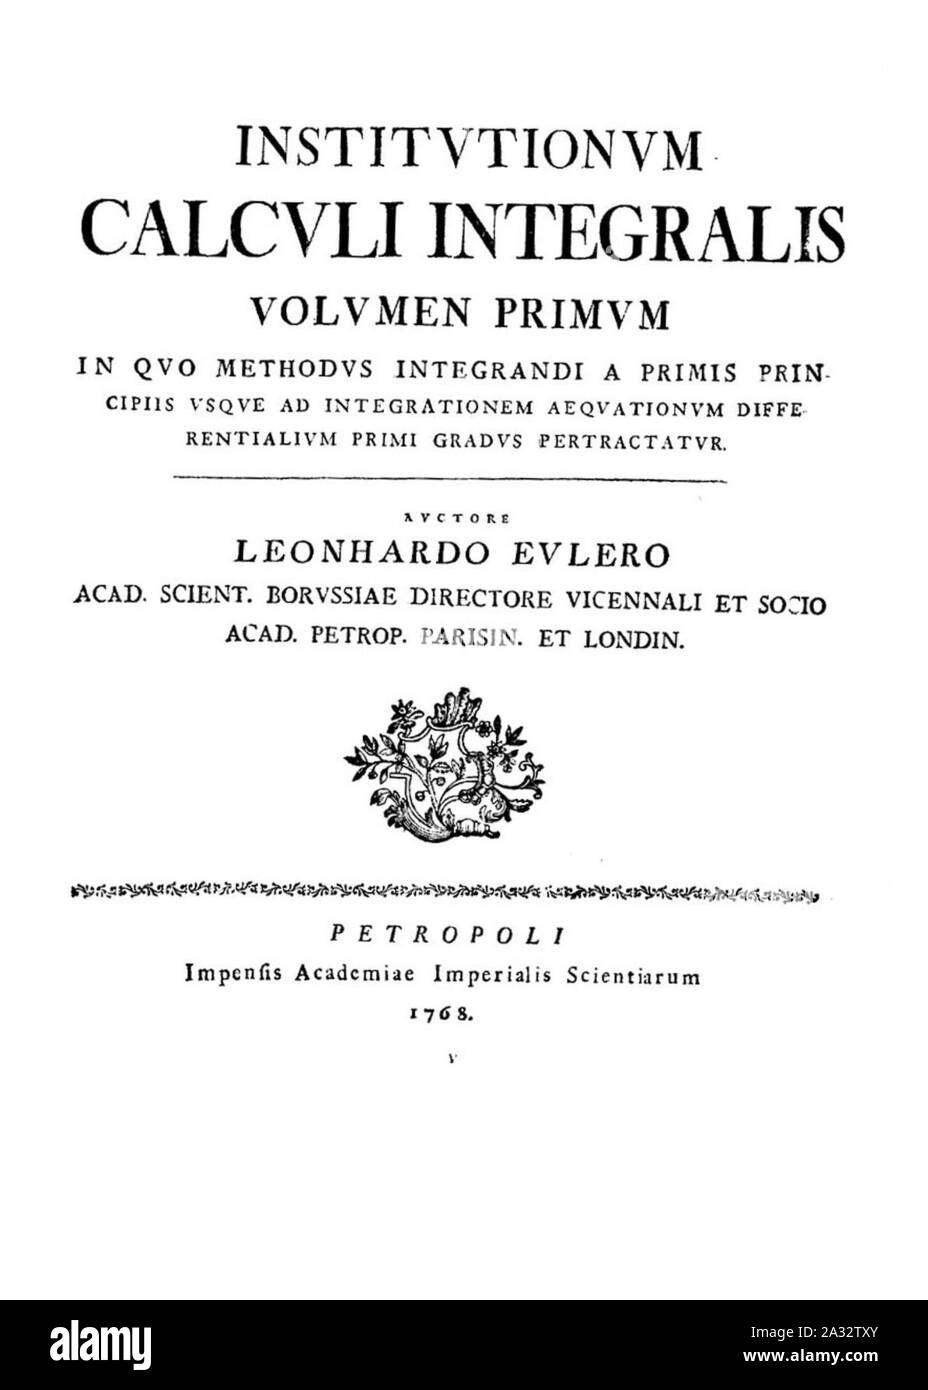 Euler - Institutionum calcoli integralis, 1768 - 1338320 BEIC F. Foto Stock